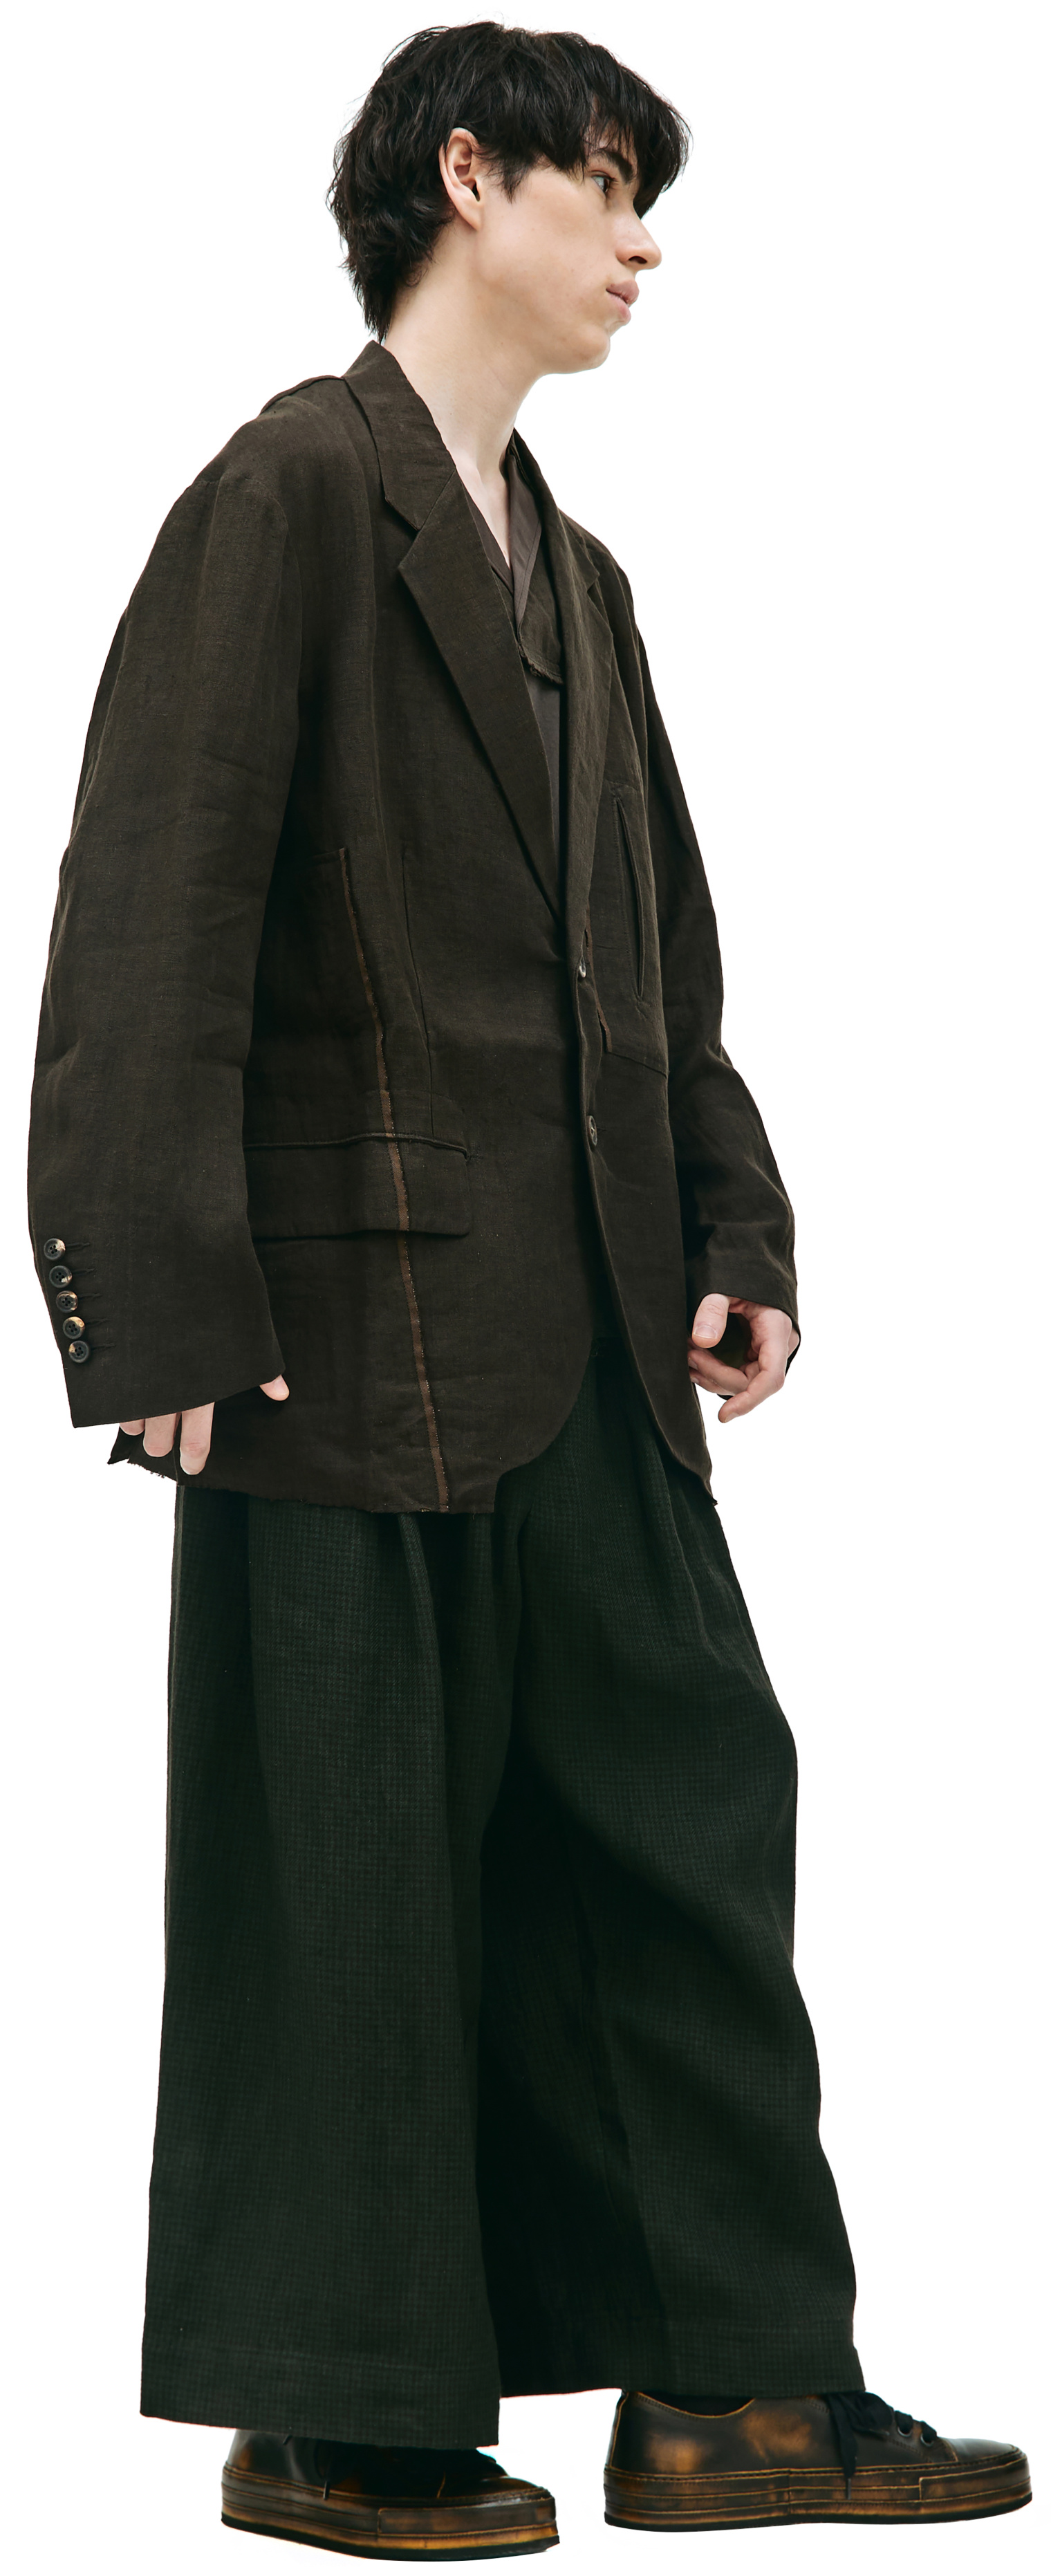 Ziggy Chen Льняной пиджак с карманами